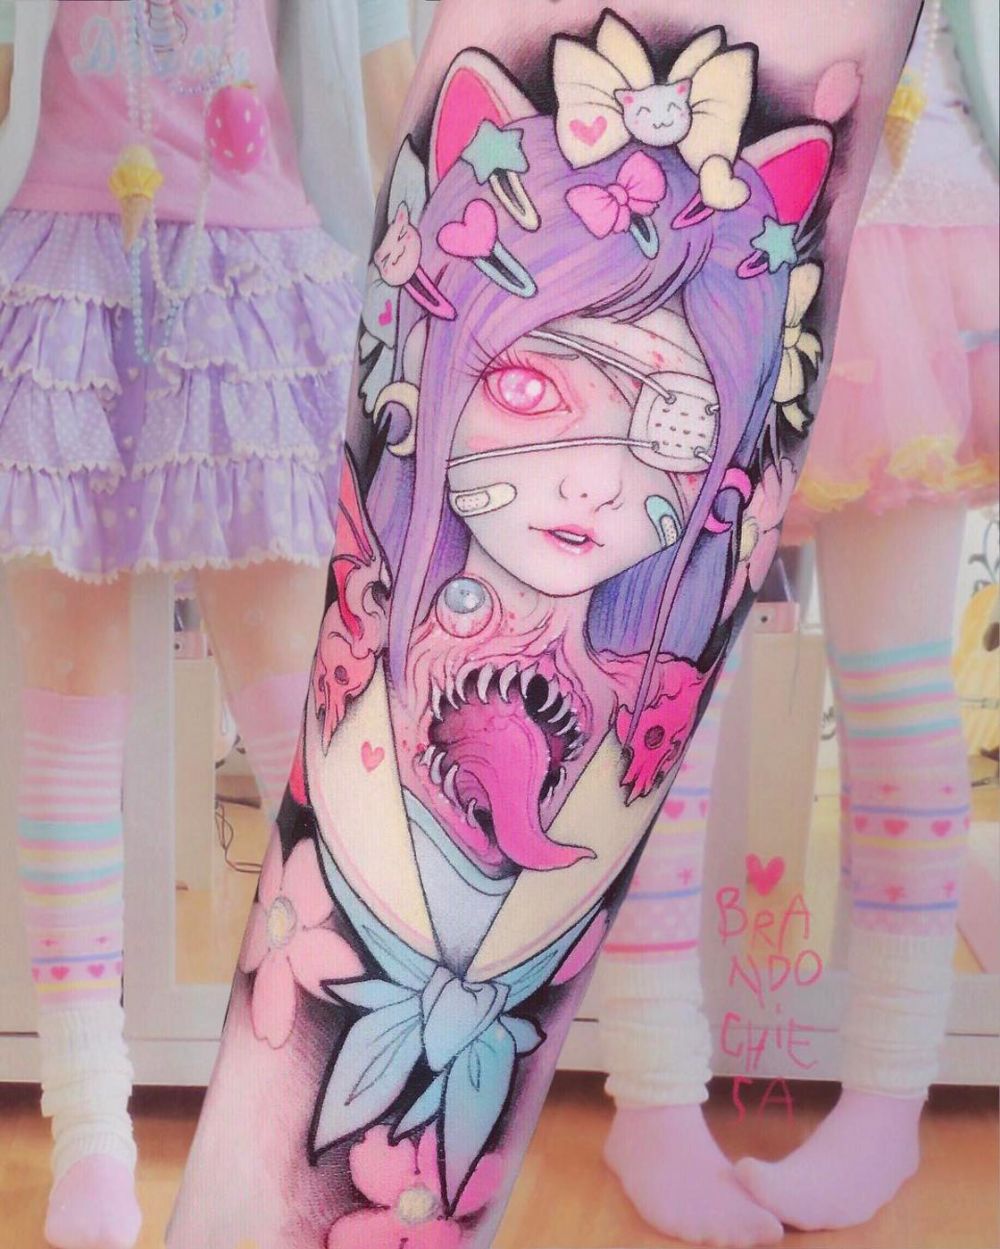 Pink tapi menyeramkan, 10 tato karya seniman ini bikin kagum dan ngeri